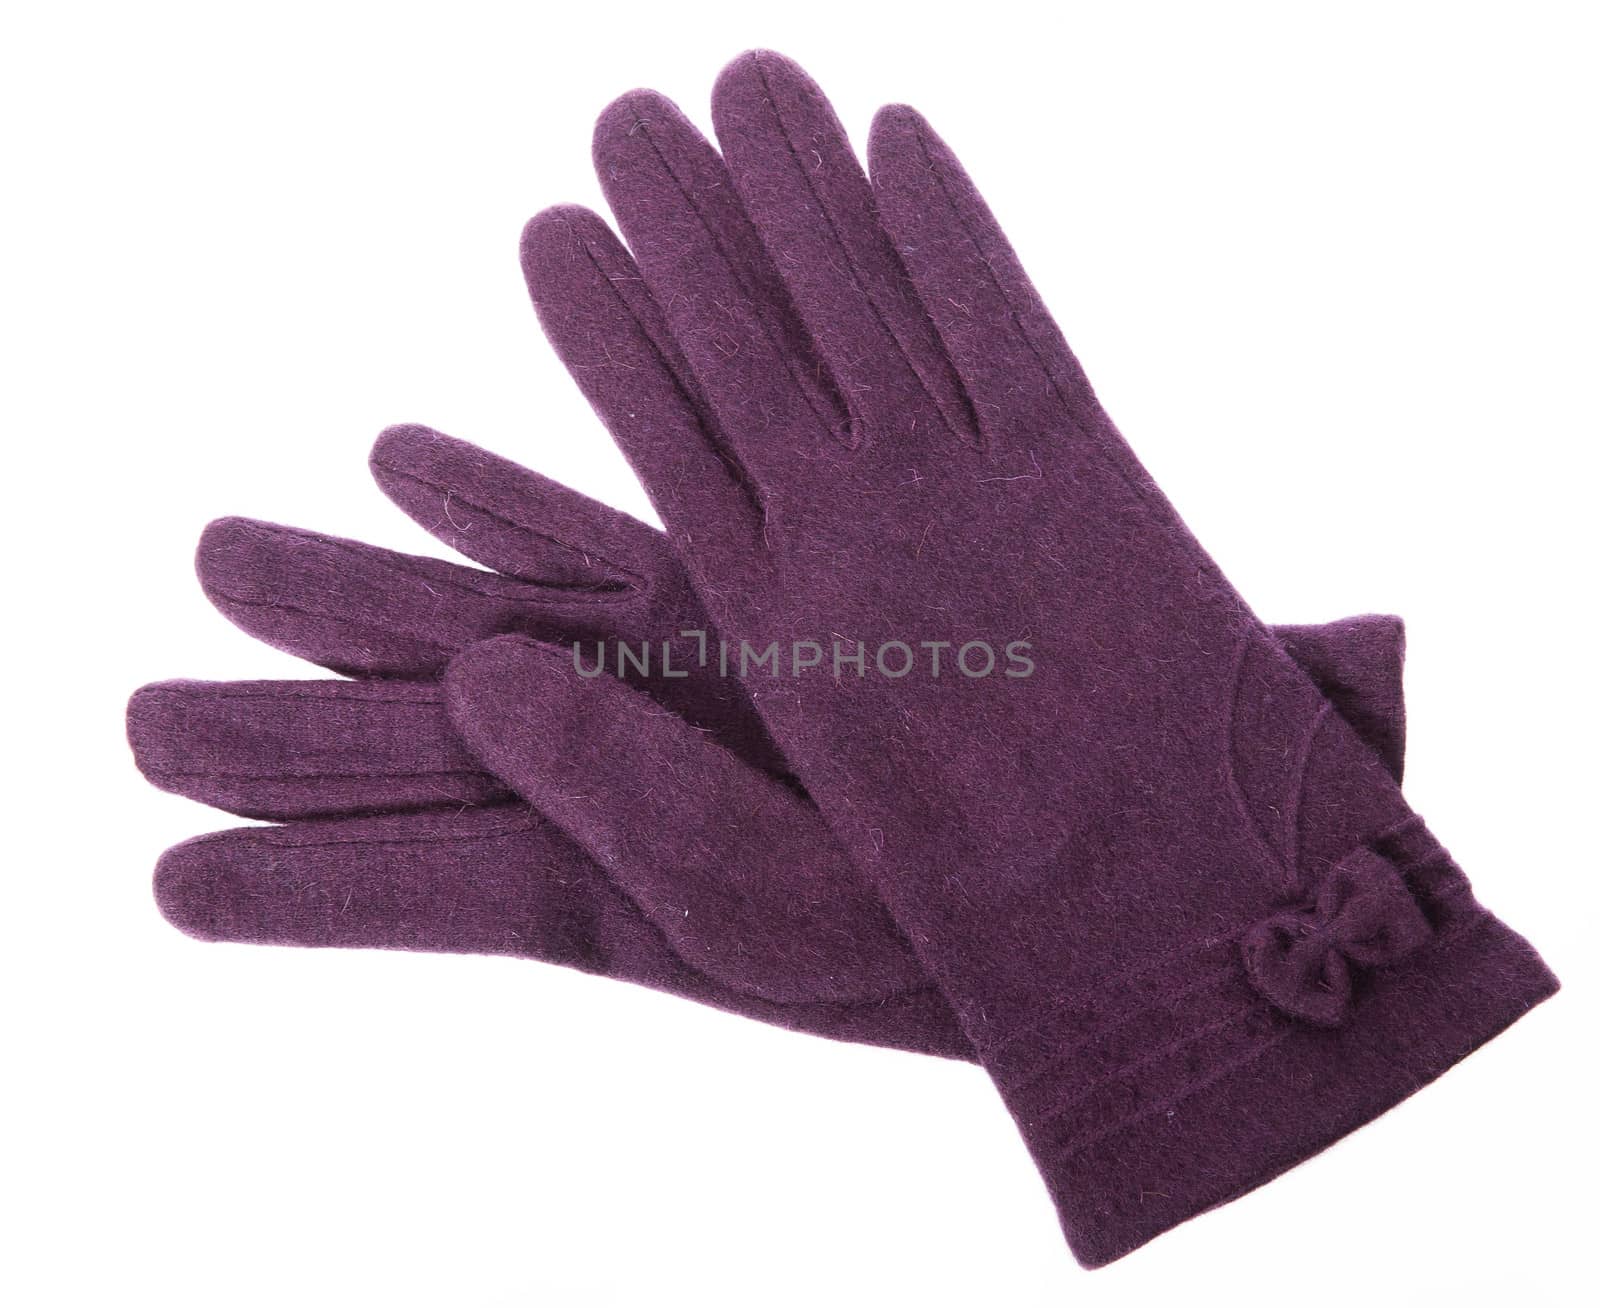 Purple gloves on white background